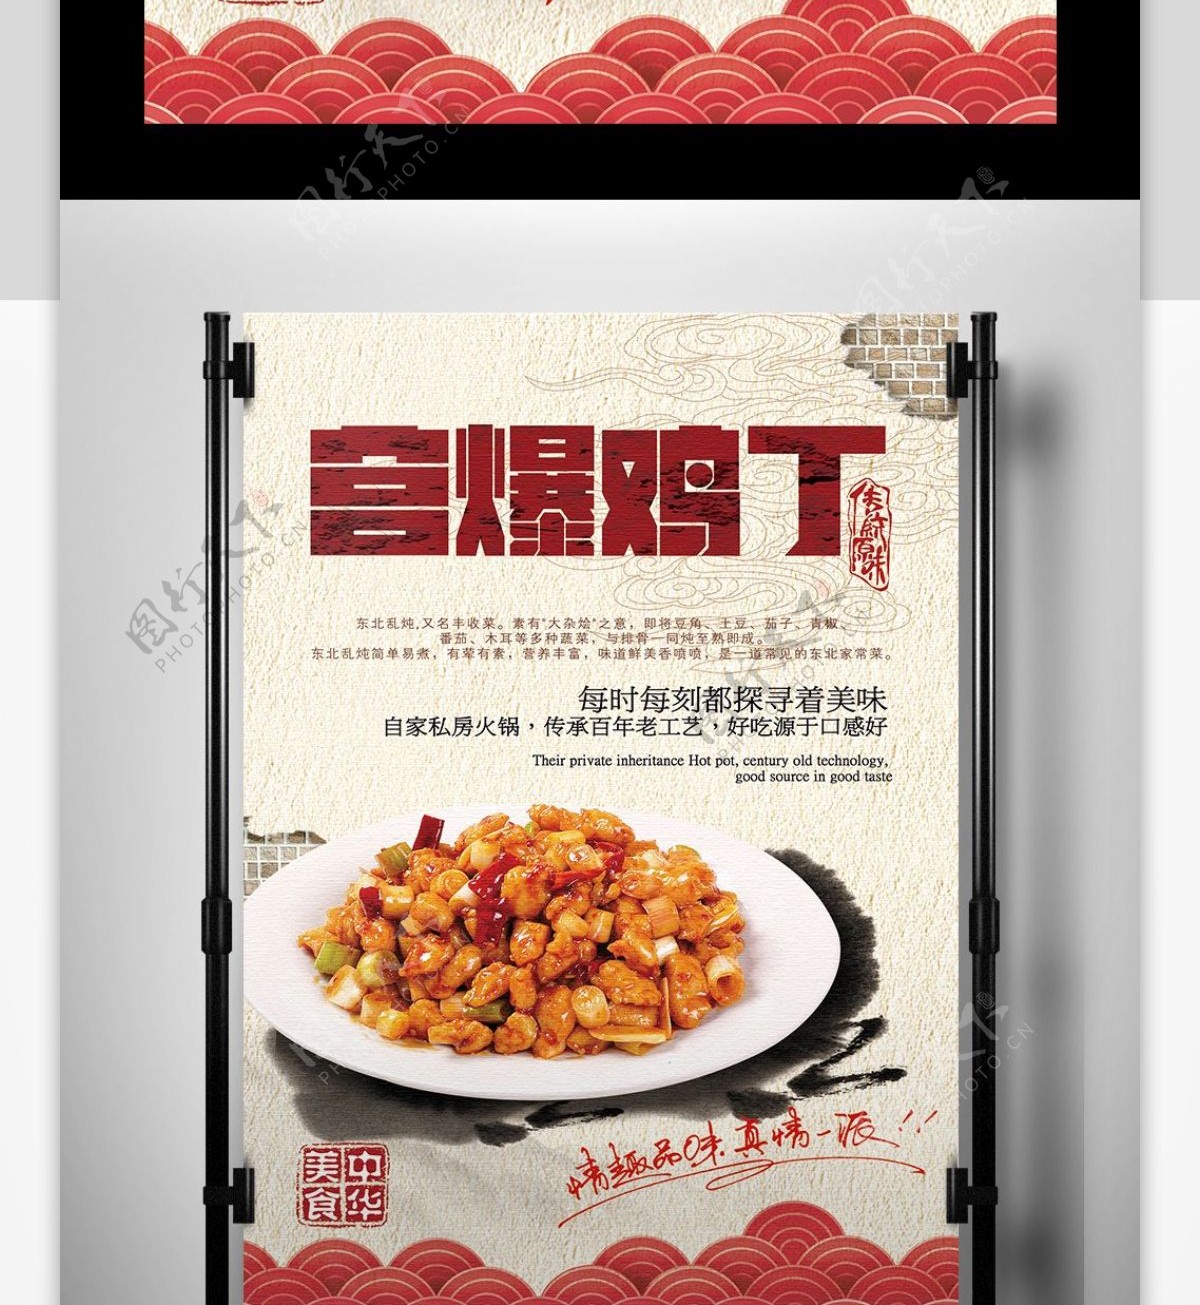 2017年简约宫保鸡丁美食海报设计